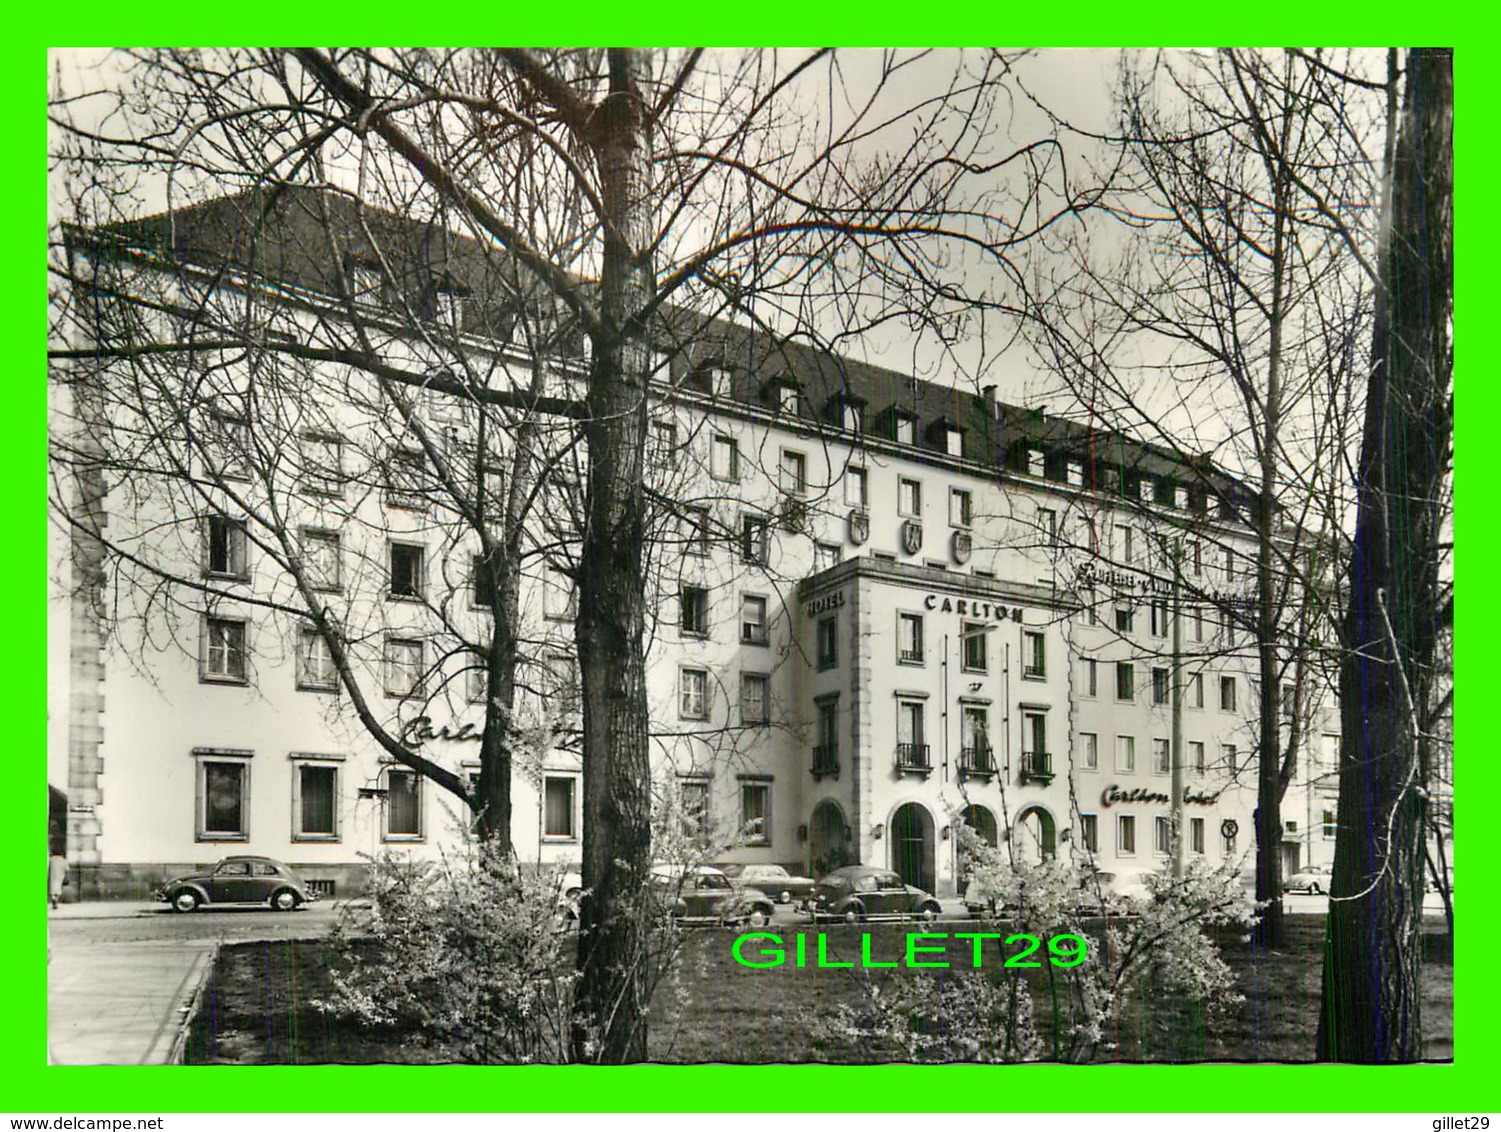 NURNBERG, GERMANY - CARLTON HOTEL - FOTO, BISHOF & BROEL - - Nuernberg